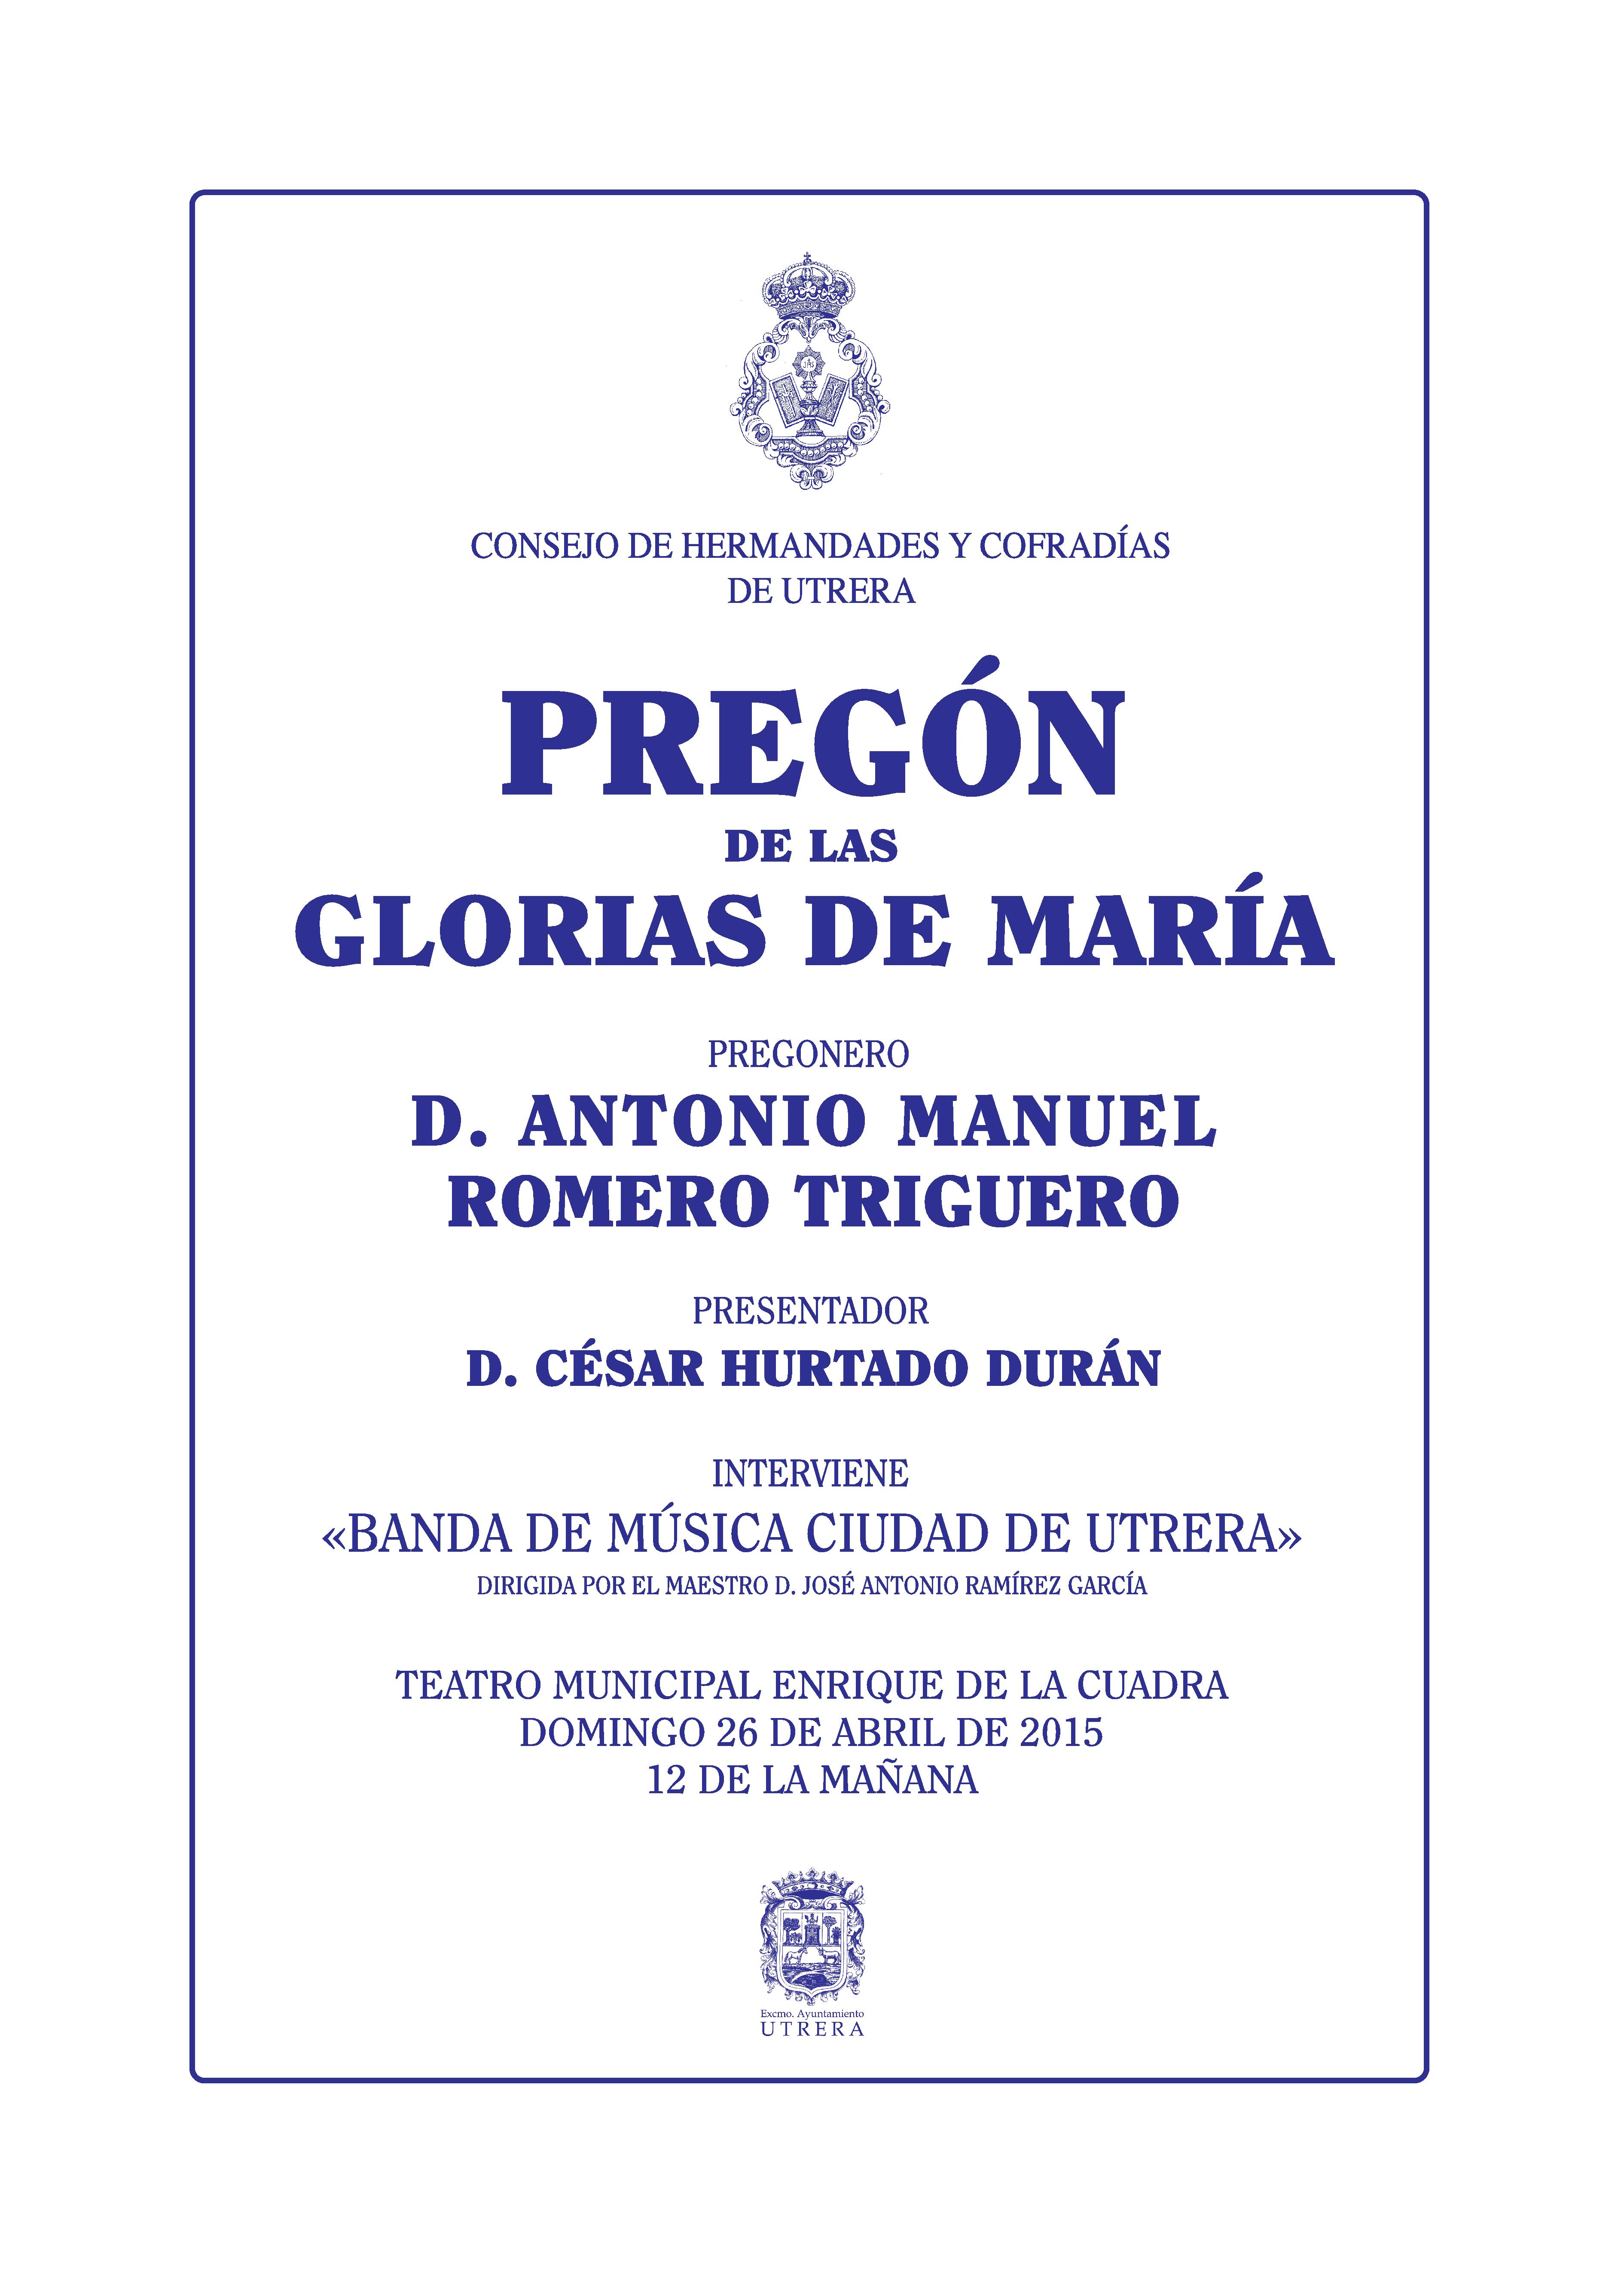 Antonio Manuel Romero Triguero, dará el Pregón de las Glorias de María el próximo domingo 26 de abril